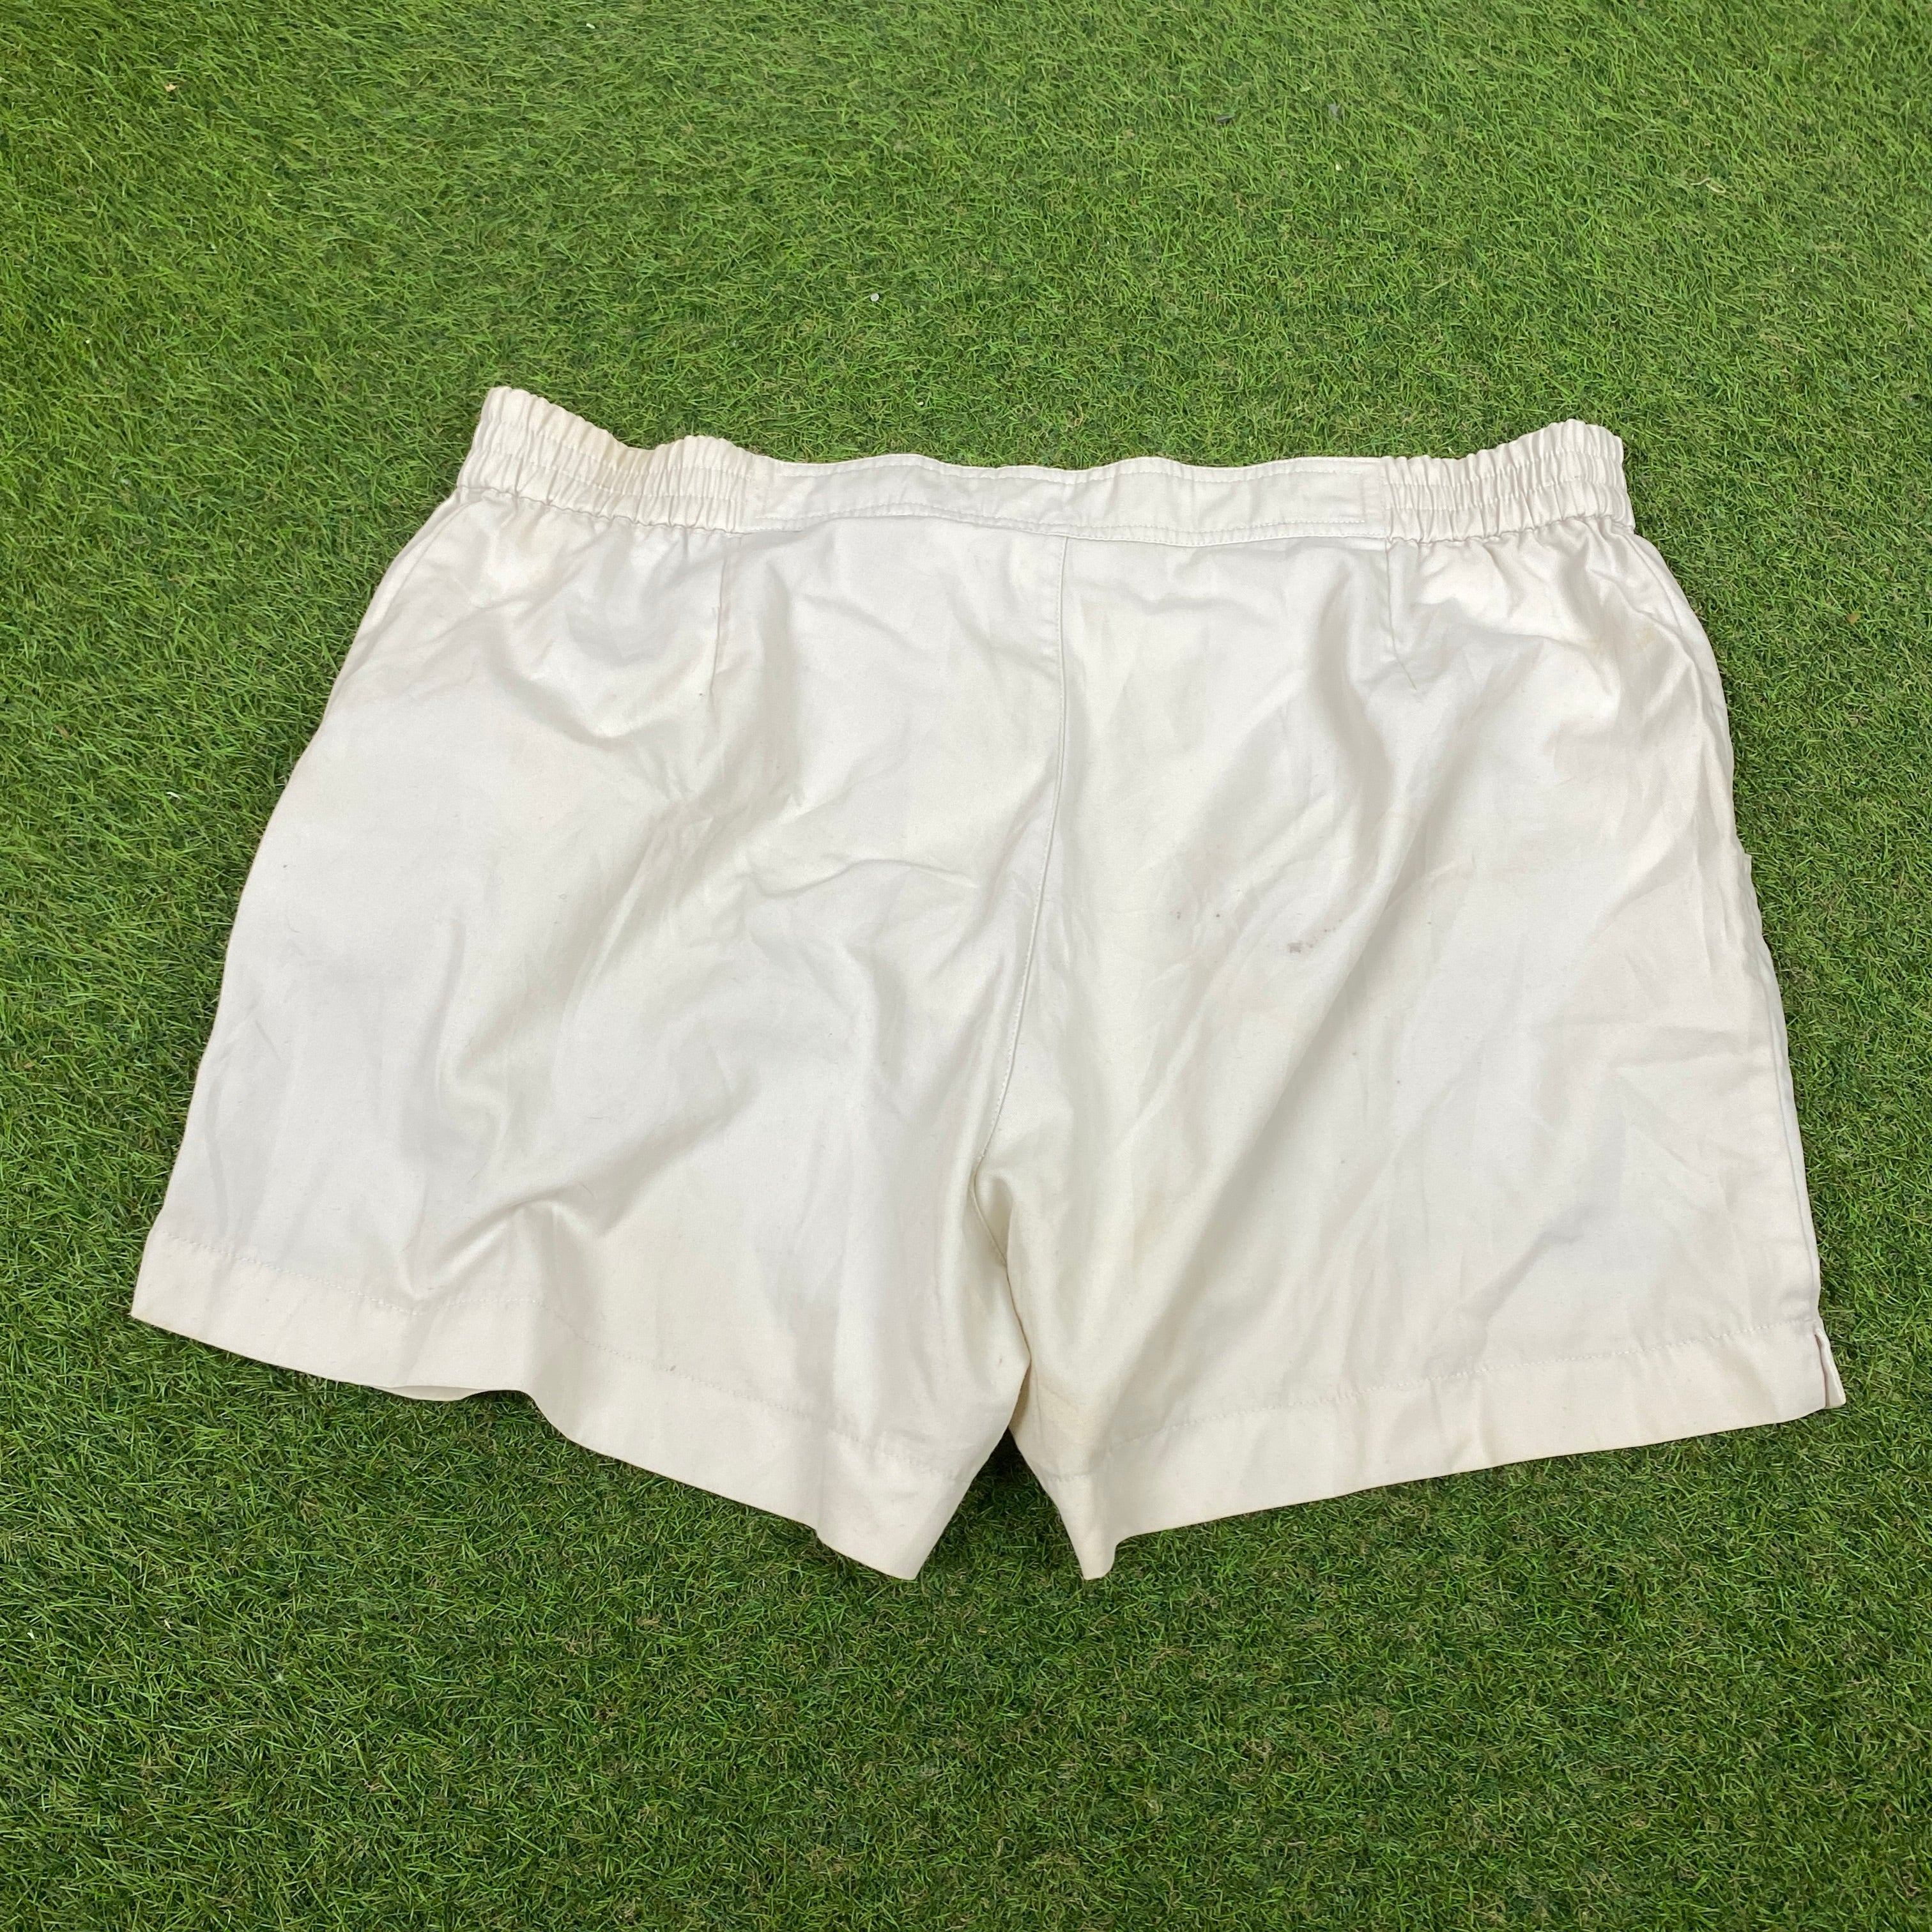 90s Adidas Tennis Shorts Brown XL